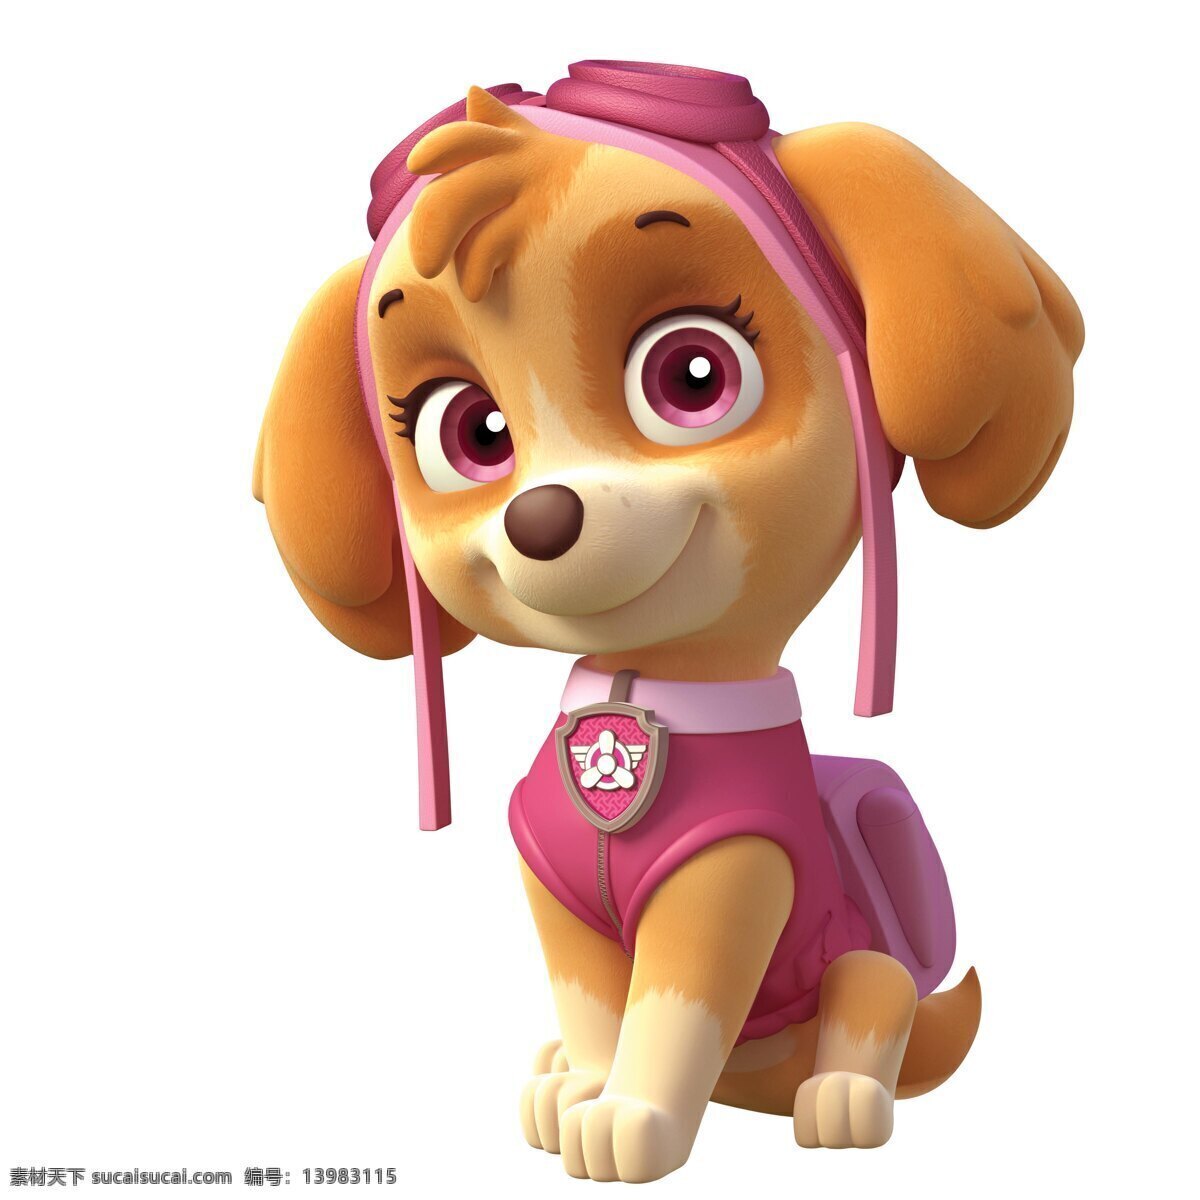 狗狗巡逻队 3d 卡通狗 卡通角色 游戏角色 可爱小狗 其它3d动漫 动漫动画